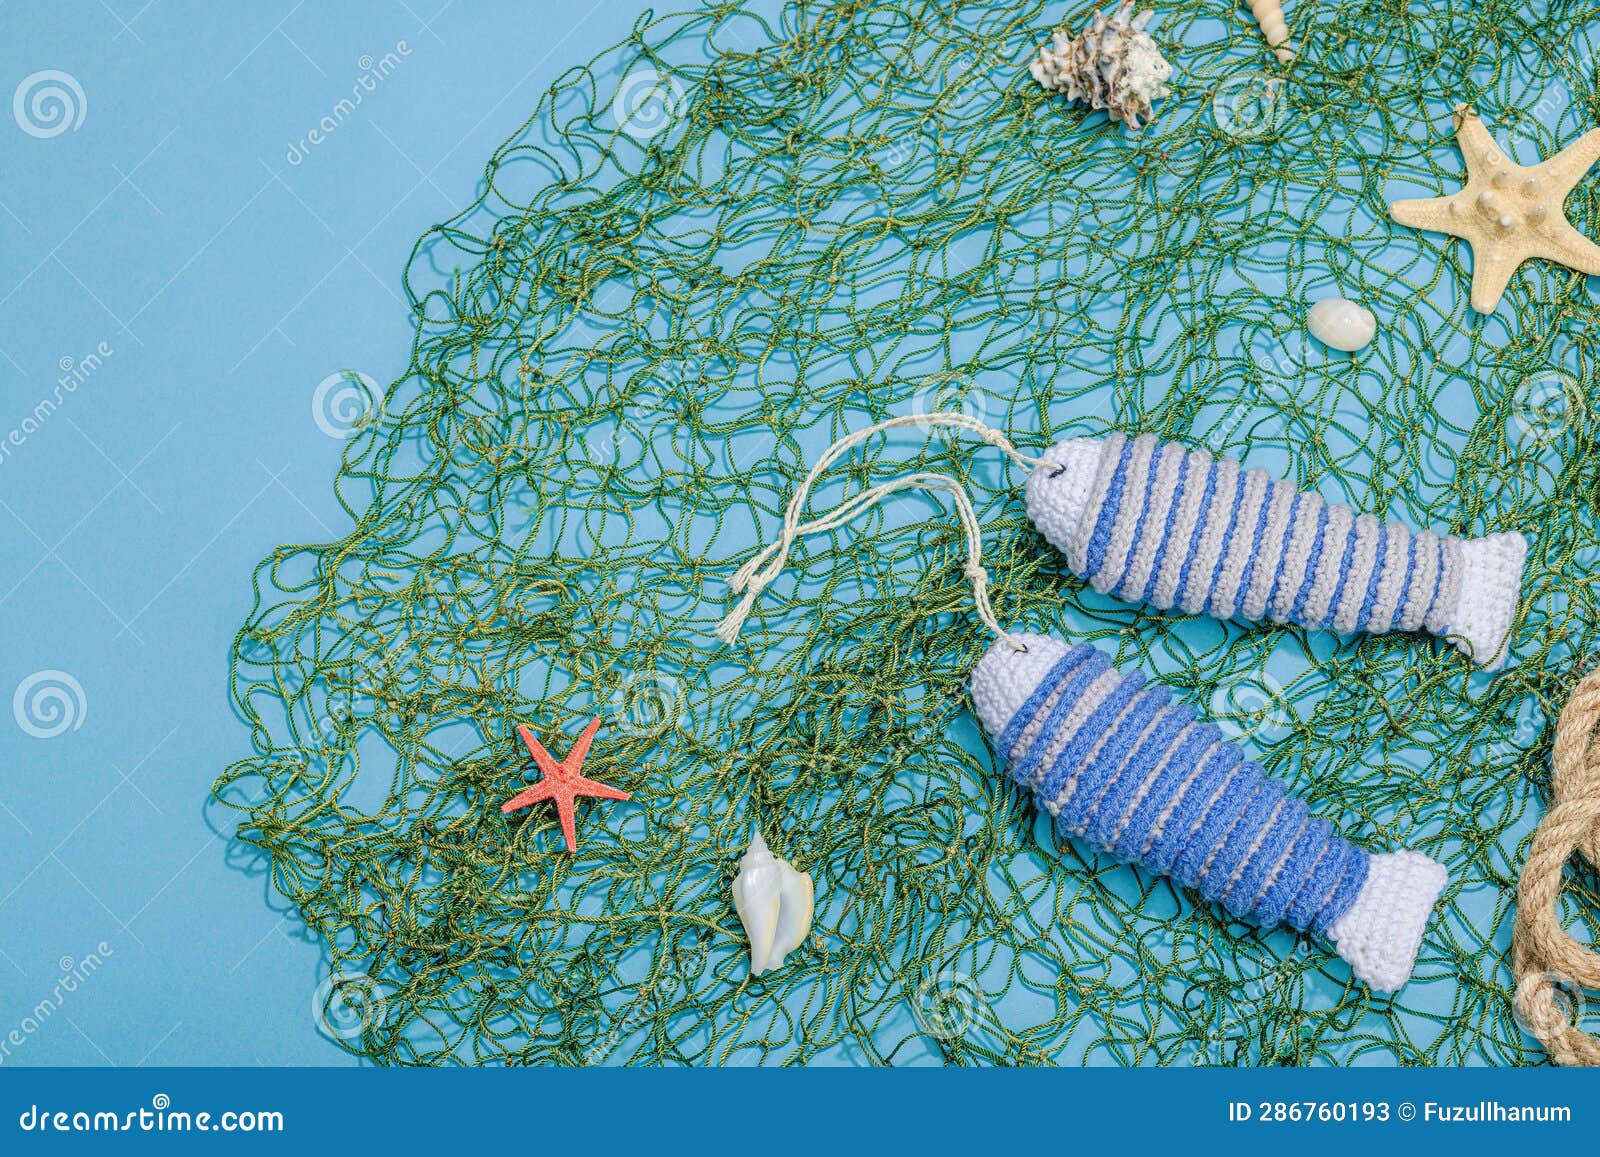 Handmade Marine Background. Crocheted Sardine Fishes, Nautical